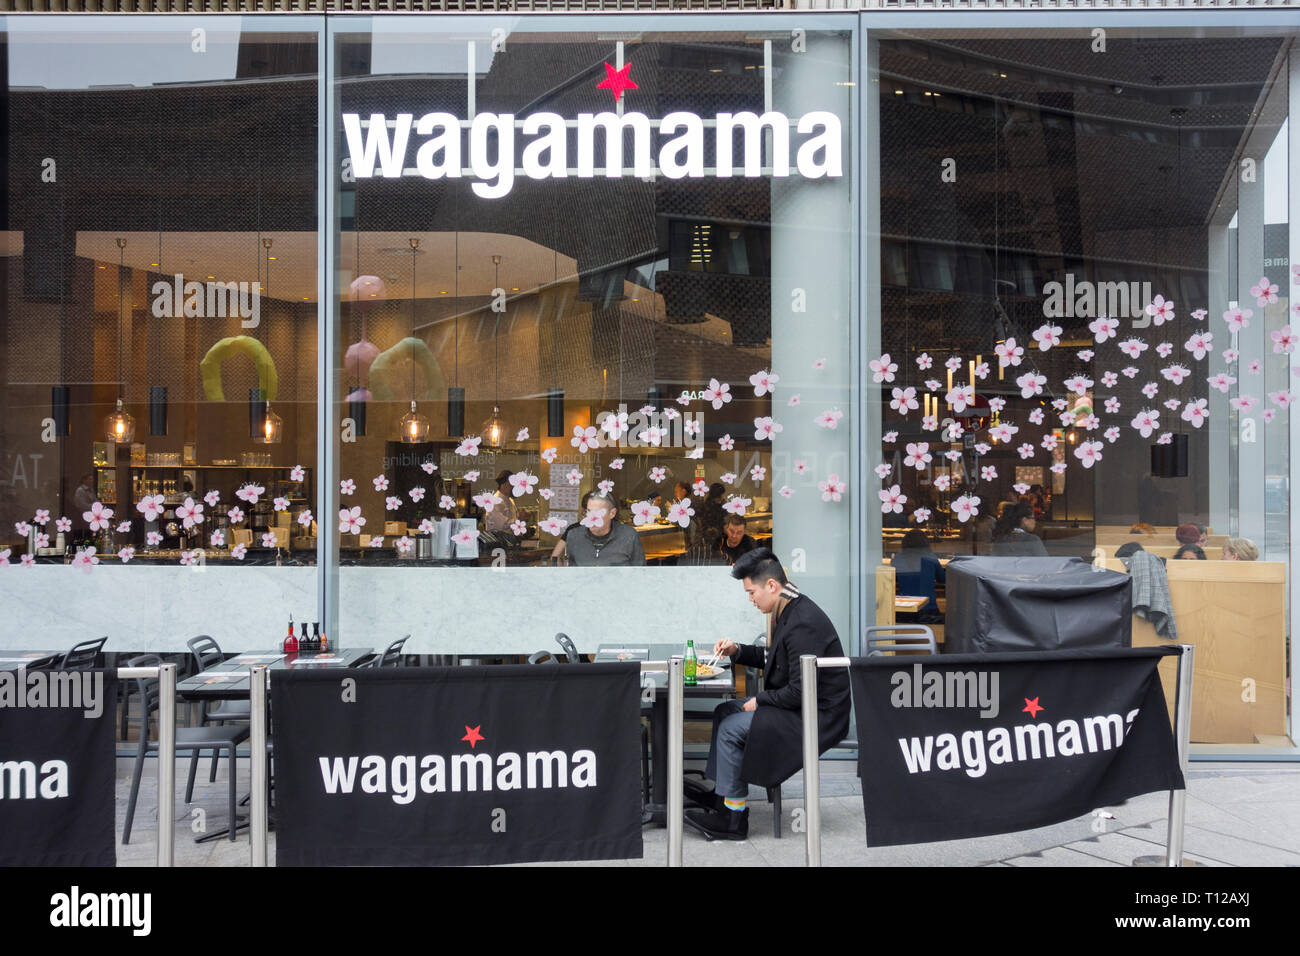 Wagamama restaurant, Bankside, Sumner Street, London, SE1, UK Stock Photo